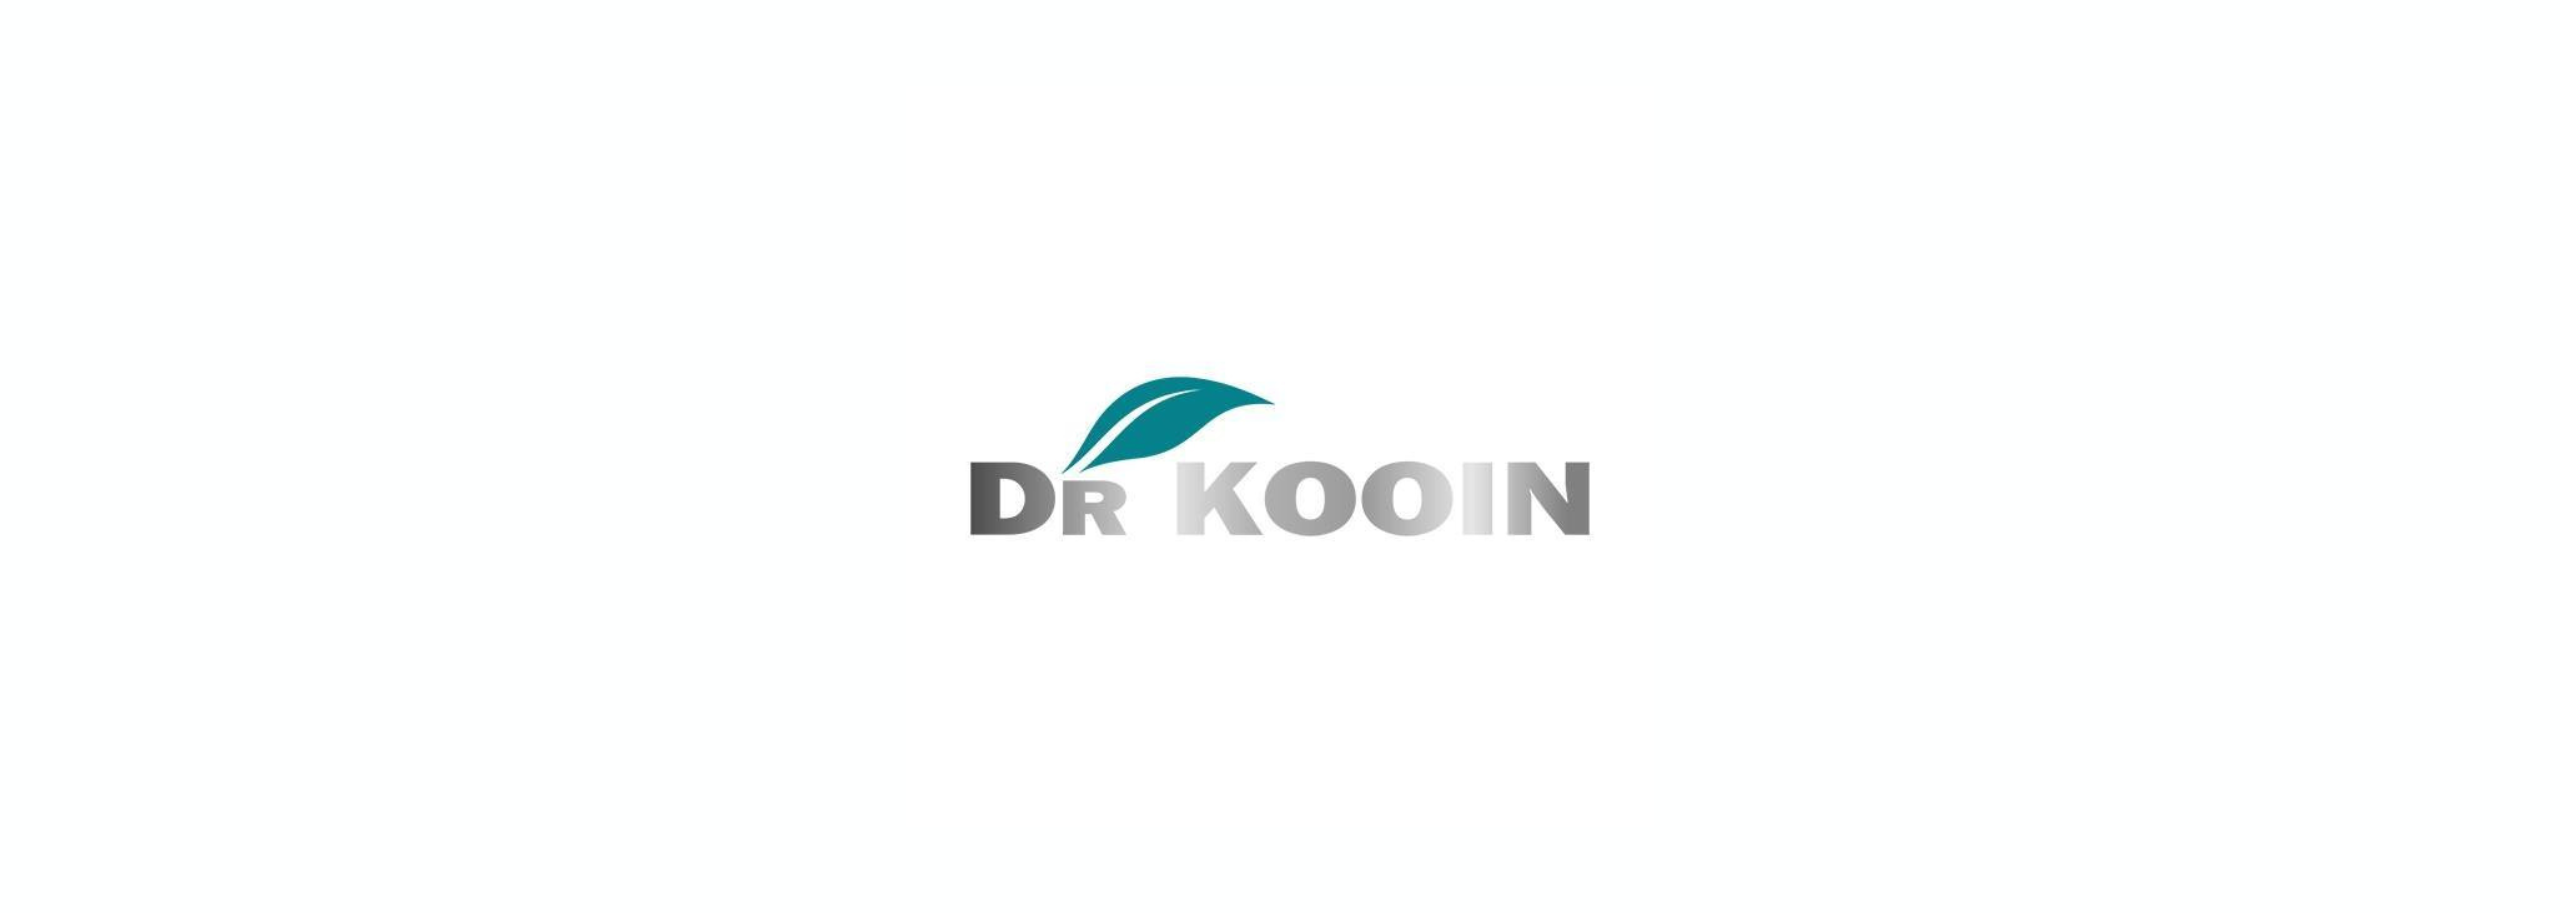 Dr. Kooin Enterprises Private Limited